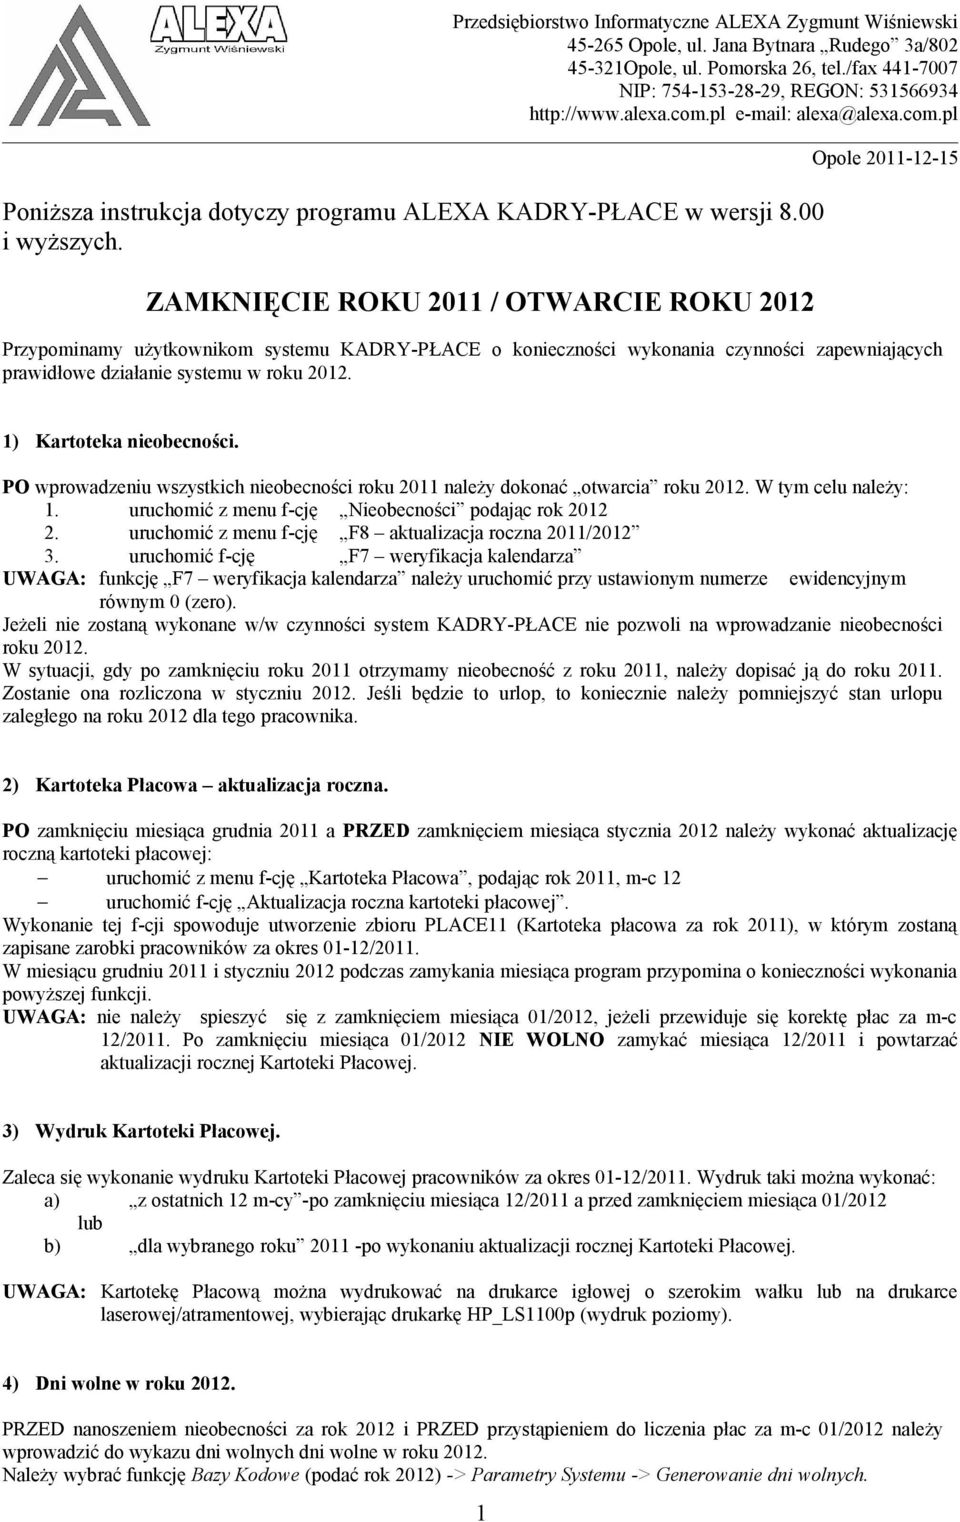 ZAMKNIĘCIE ROKU 2011 / OTWARCIE ROKU 2012 Opole 2011-12-15 Przypominamy użytkownikom systemu KADRY-PŁACE o konieczności wykonania czynności zapewniających prawidłowe działanie systemu w roku 2012.